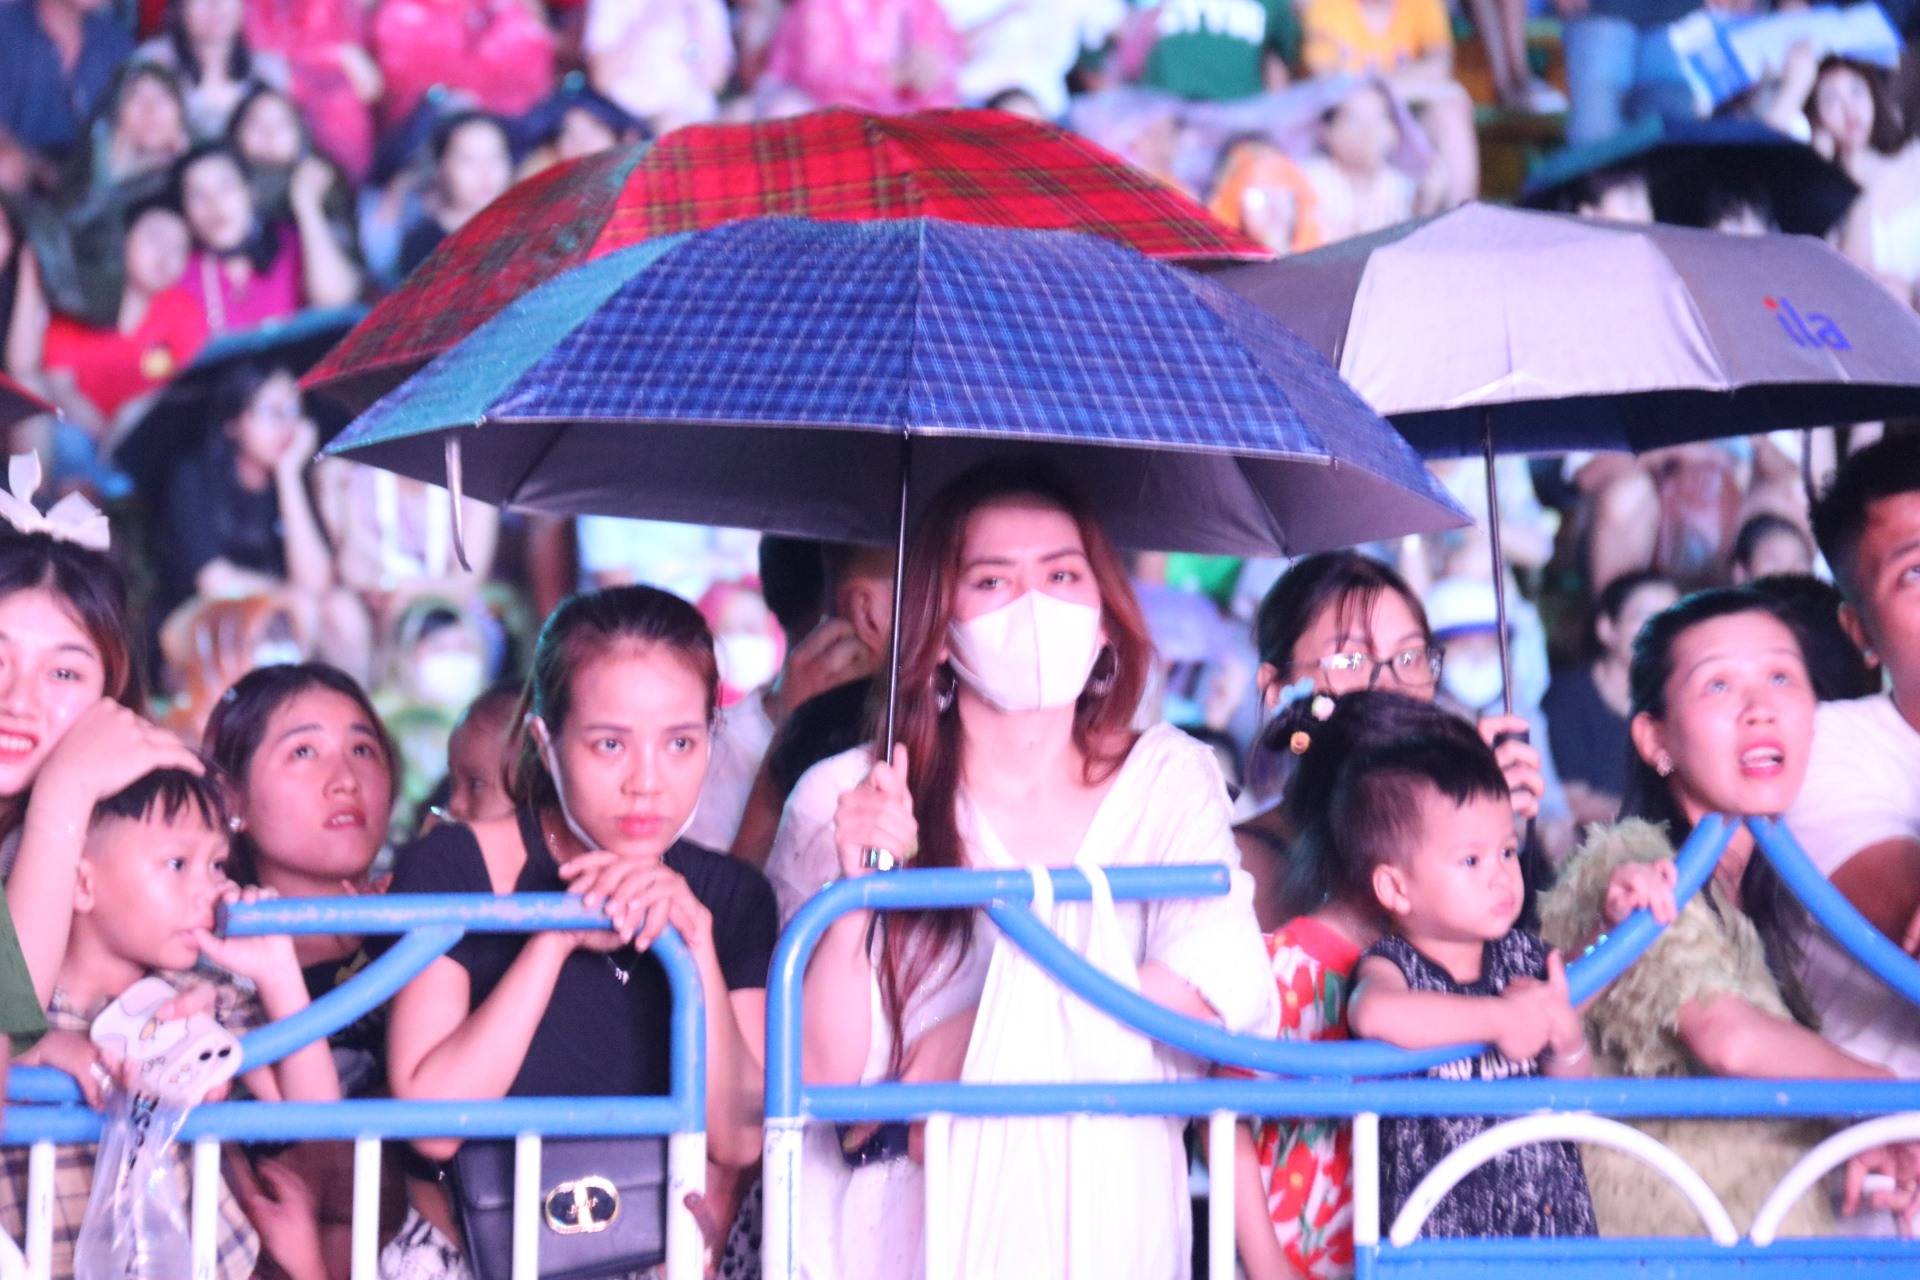 Trong mưa trên sân khấu các diễn viên vẫn thể hiện hết mình bởi dưới khán đài hàng nghìn người không kể thời tiết vẫn dõi theo cổ vũ nhiệt tình. Ảnh: Phương Linh